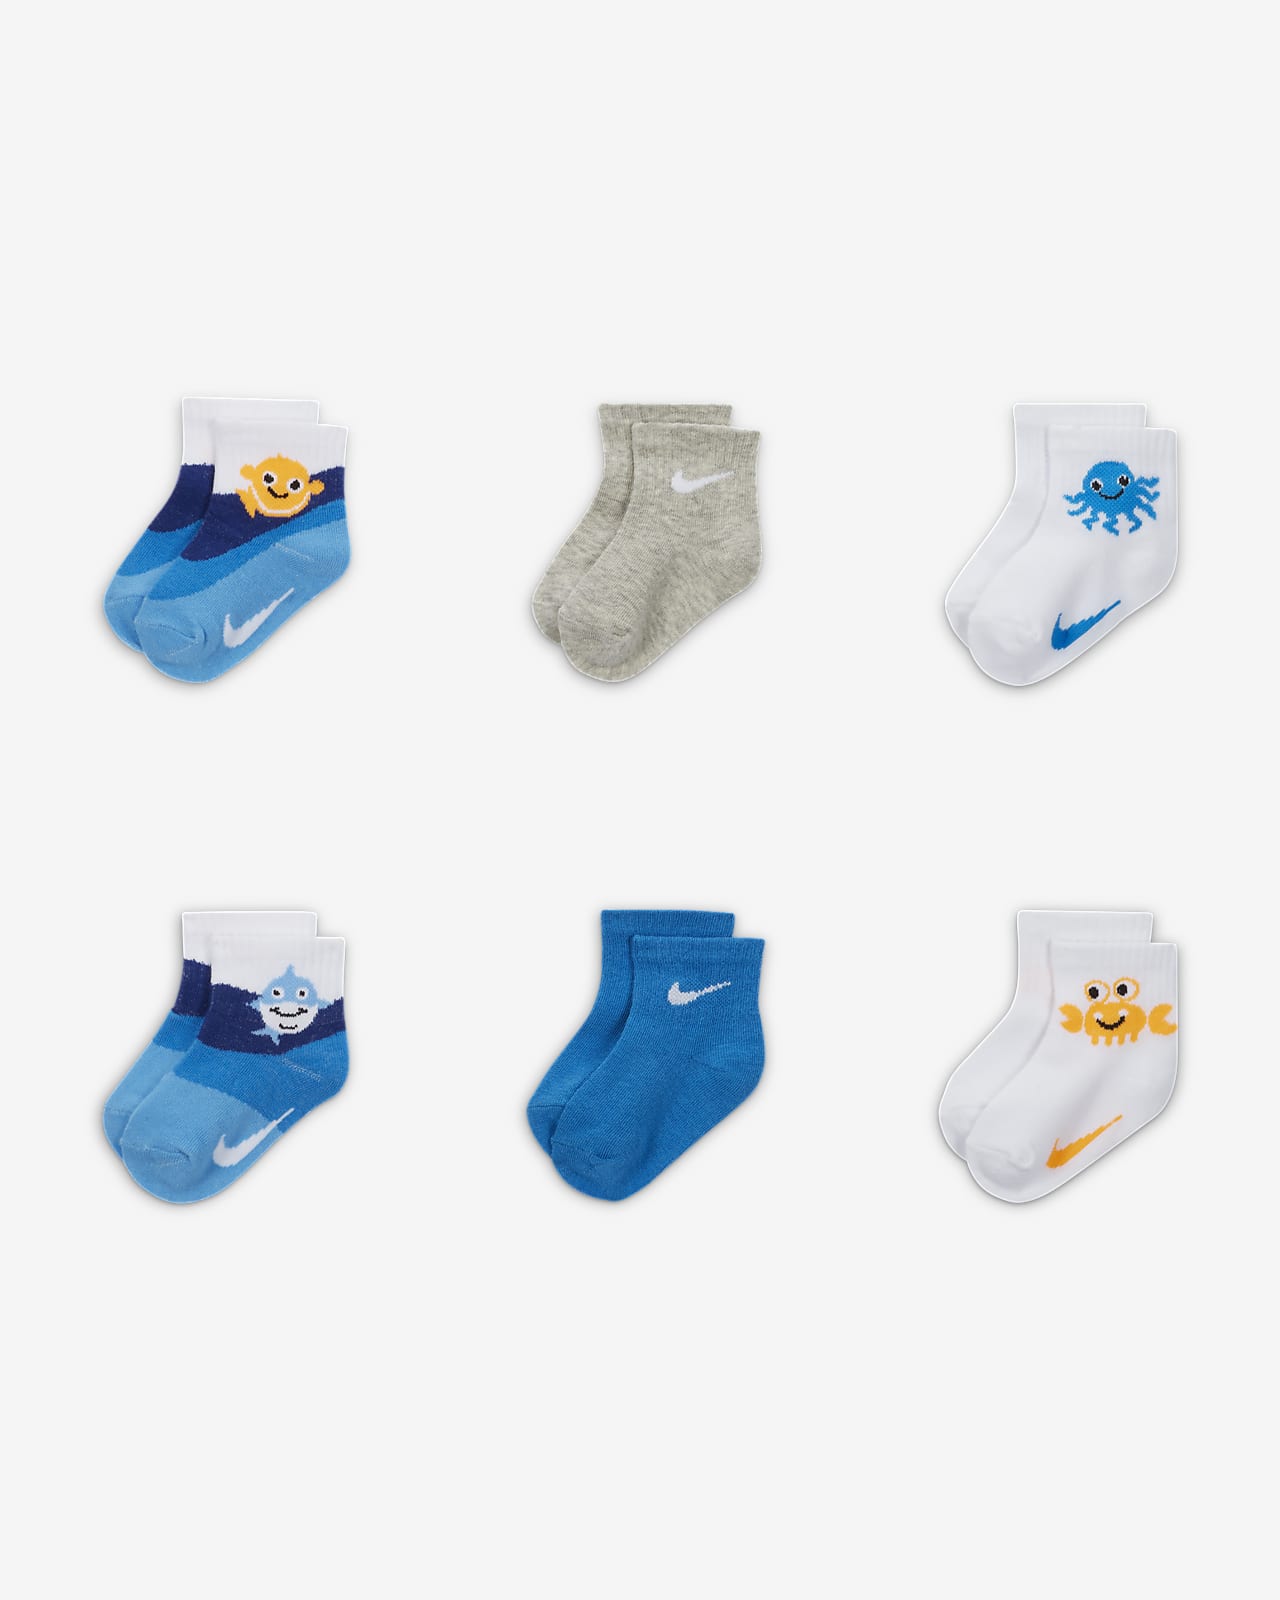 Nike Coral Reef Infant Socks (6 Pairs) Socken für Babys